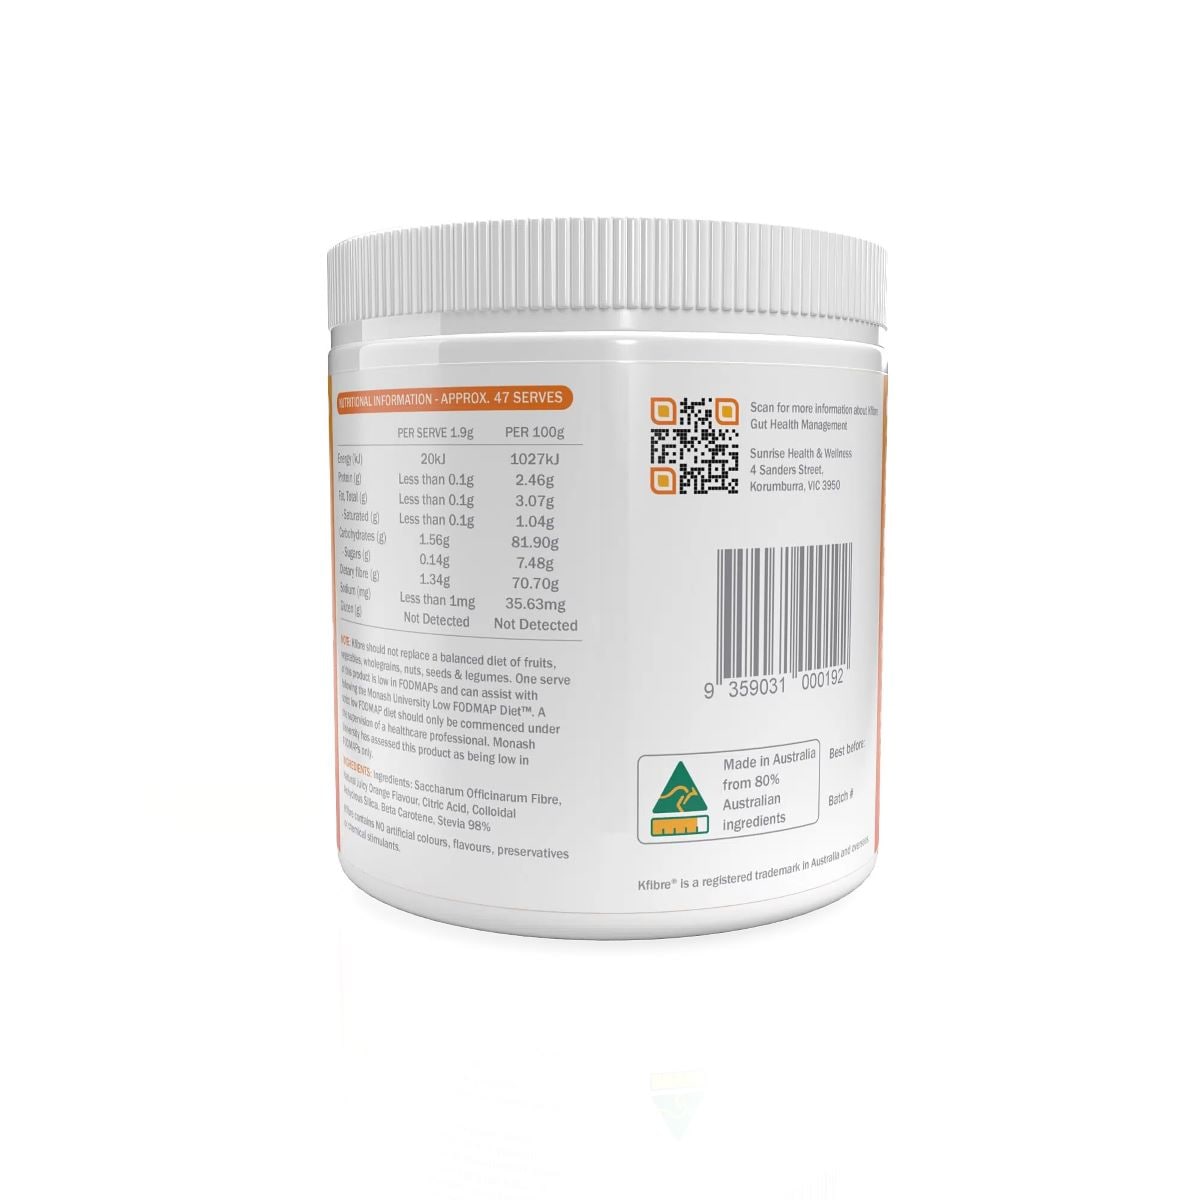 Kfibre Essential Gut Health Fibre Orange Flavour Tub 80g